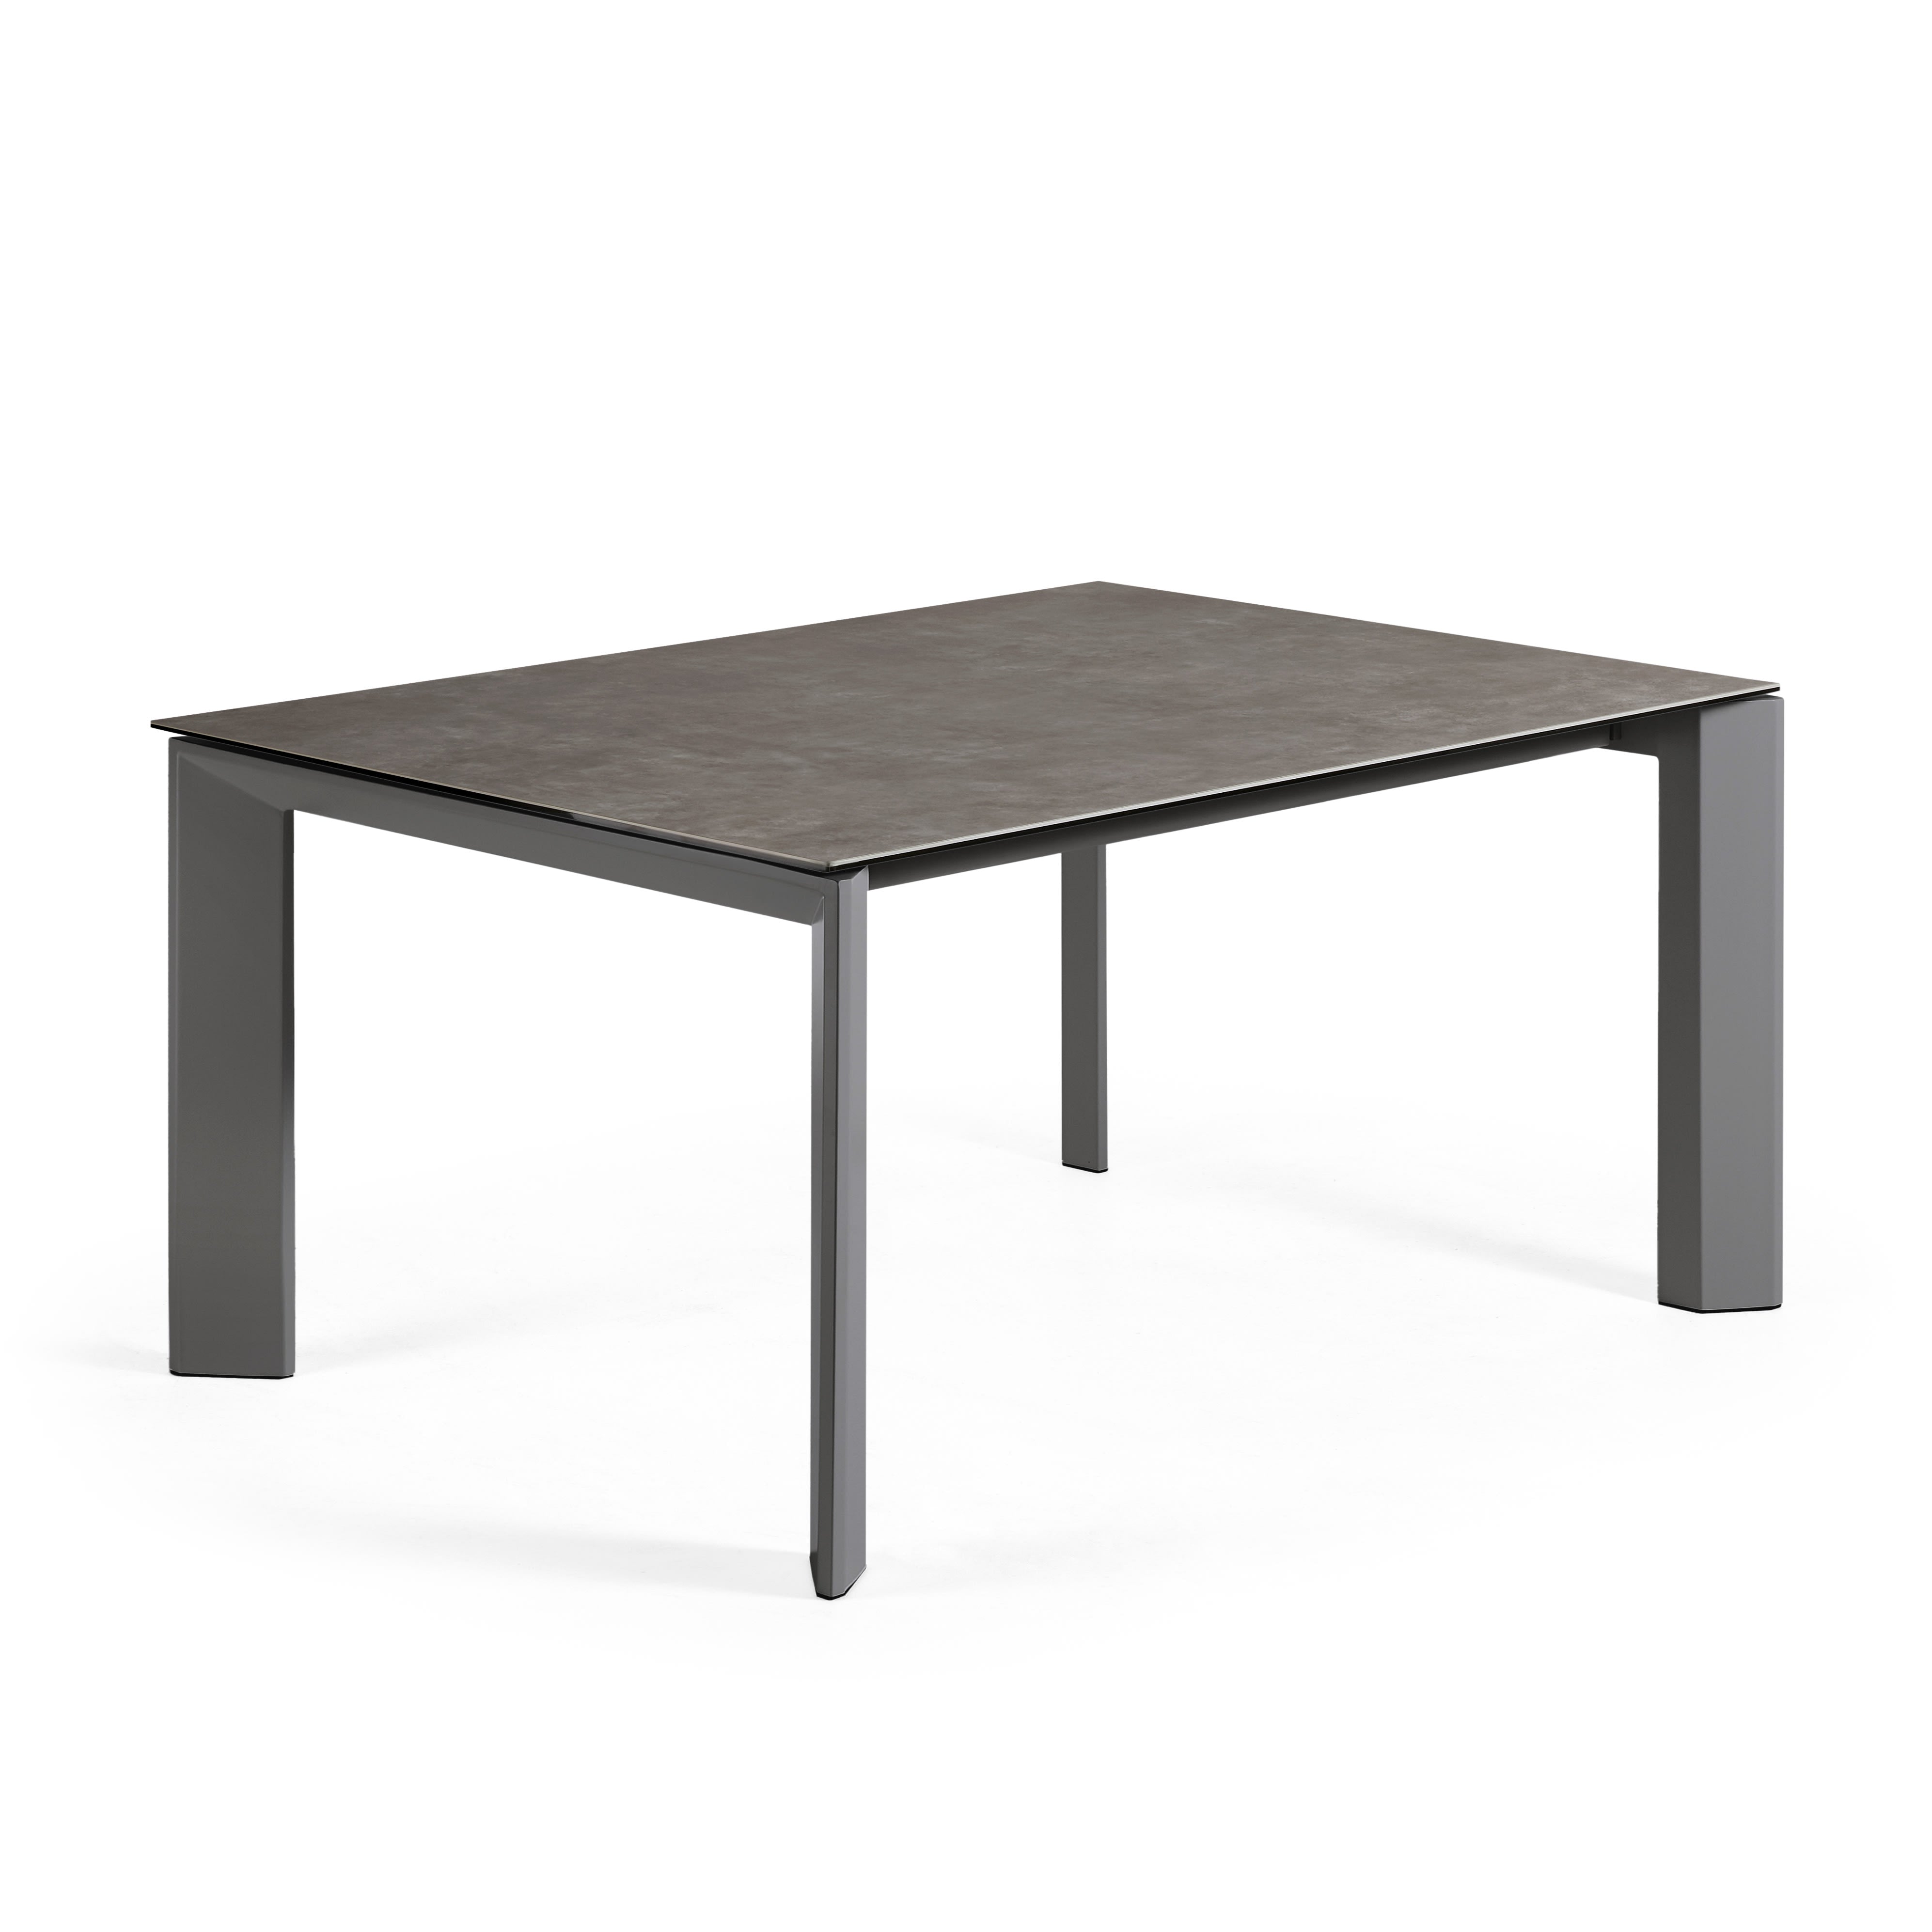 Axis kihúzható kerámia asztal Vulcano Ceniza befejezéssel, antracit acél lábakkal 160 (220)cm